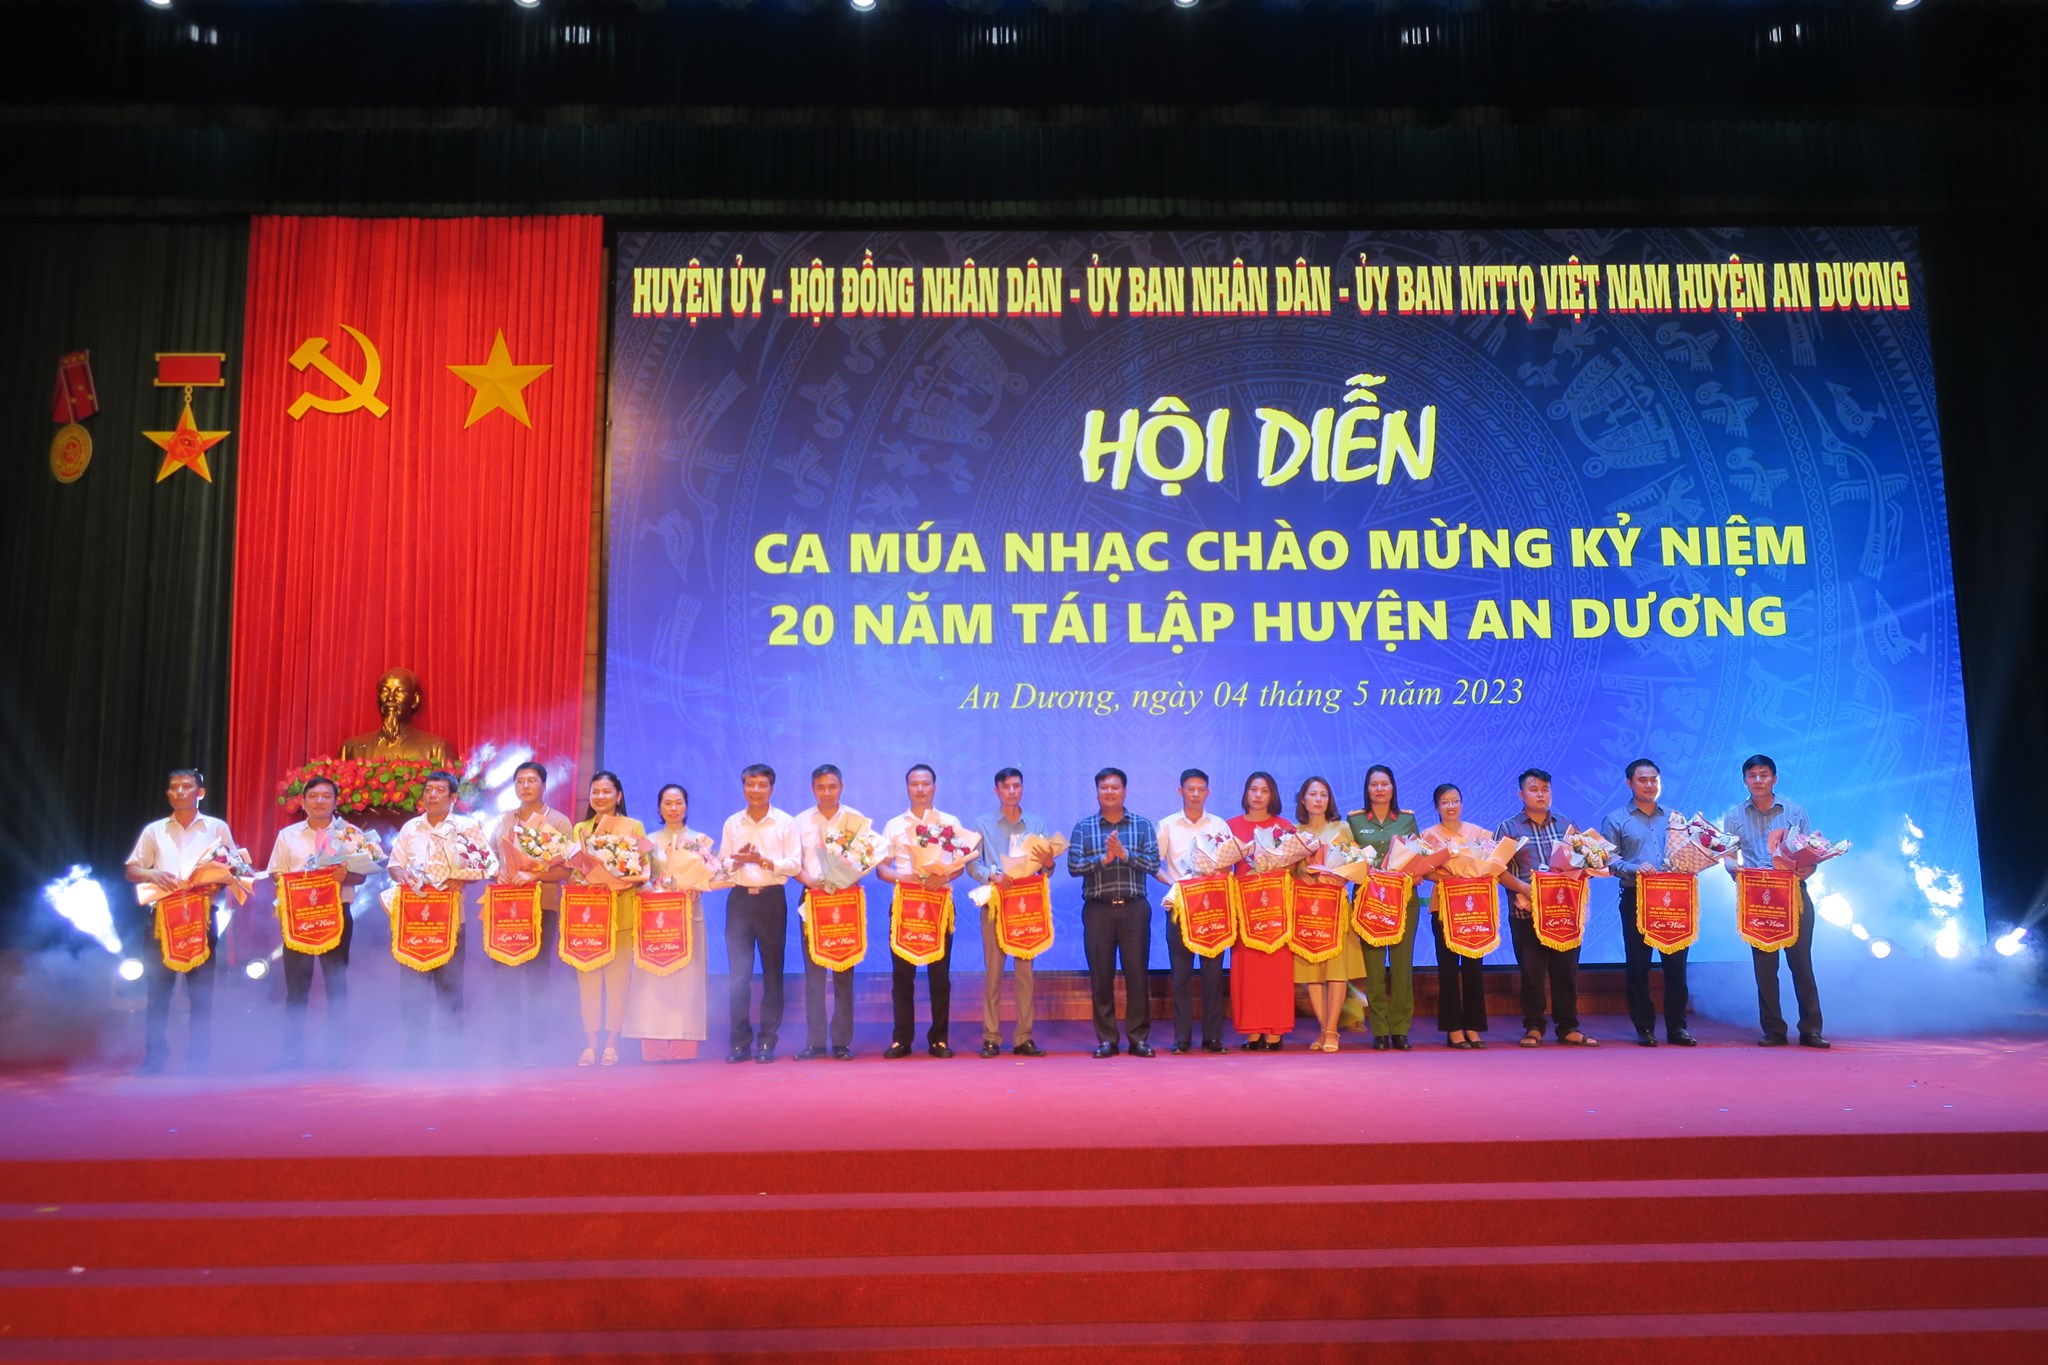 Lãnh đạo huyện An Dương tặng cờ lưu niệm các đơn vị tham gia hội diễn